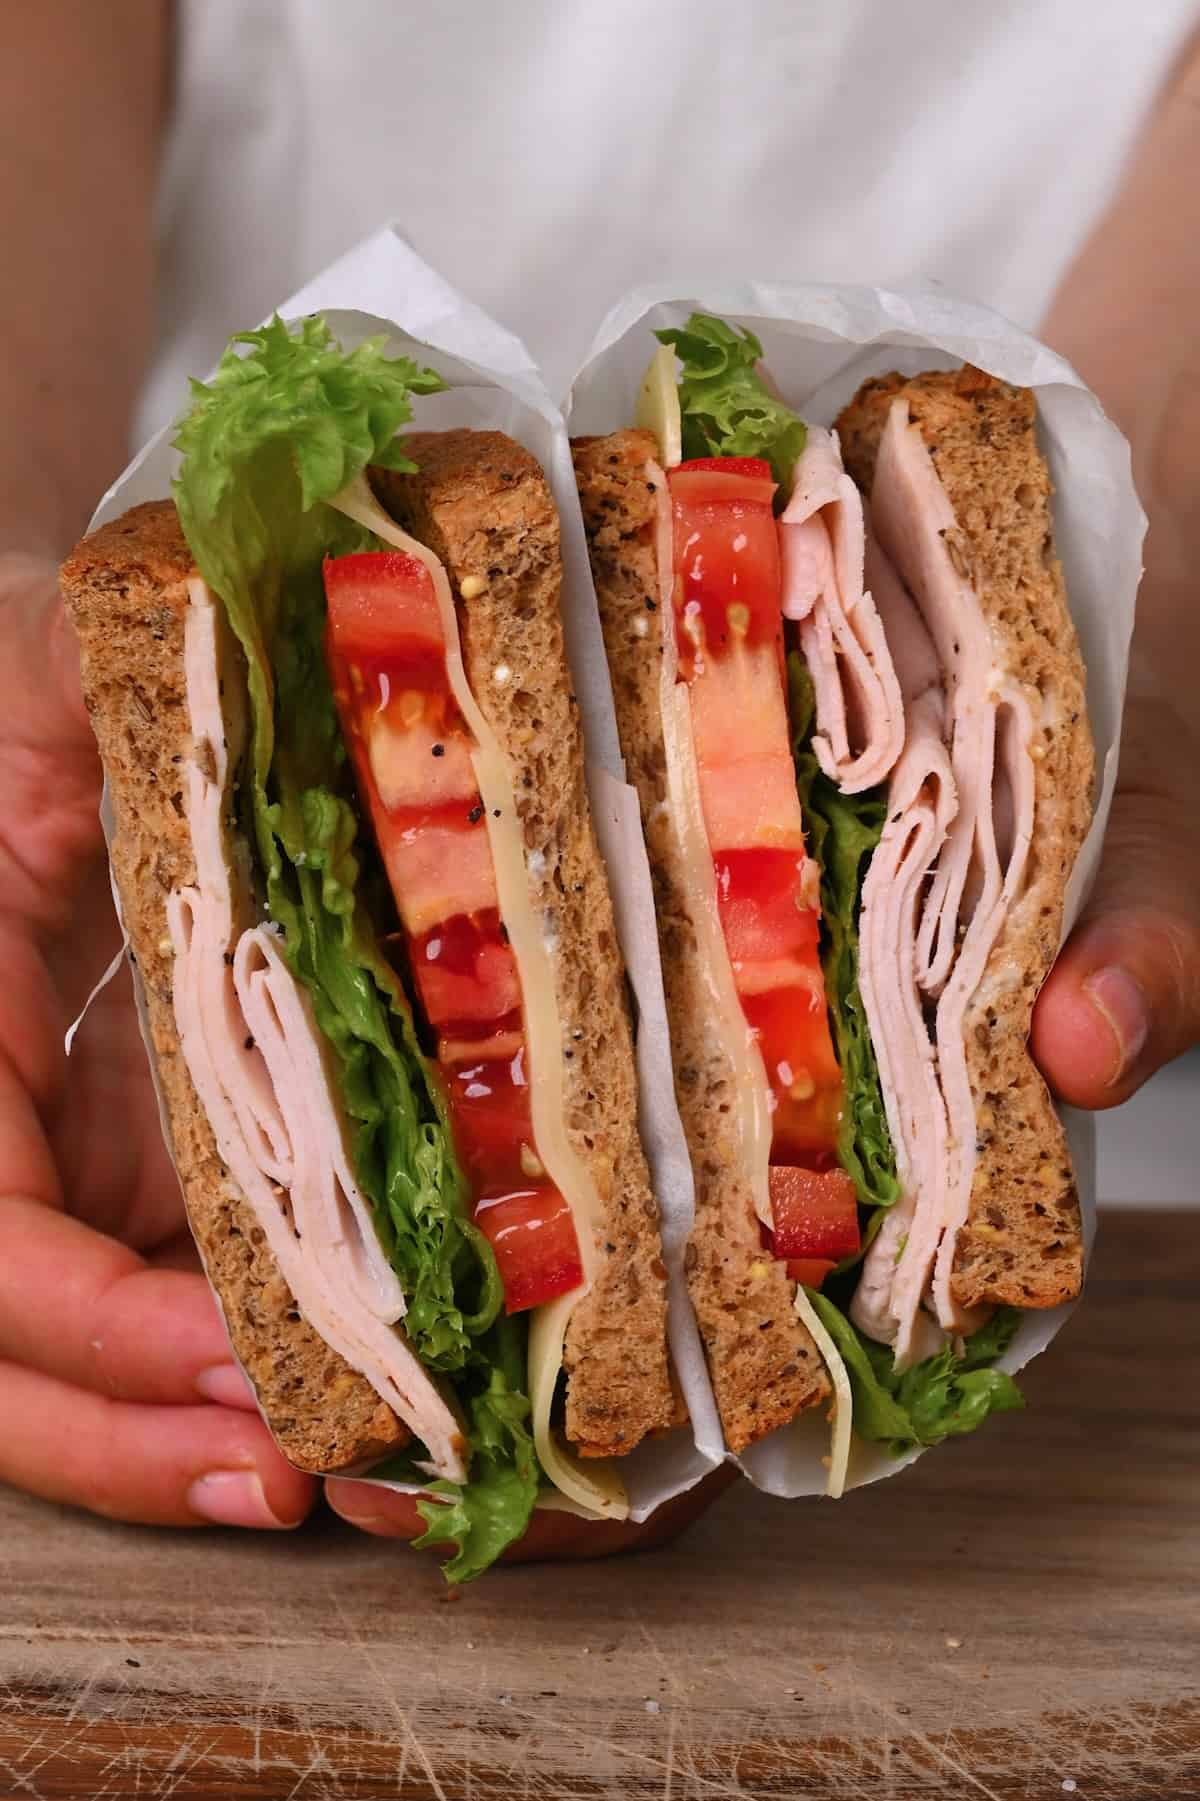 Turkey sandwich cut in two